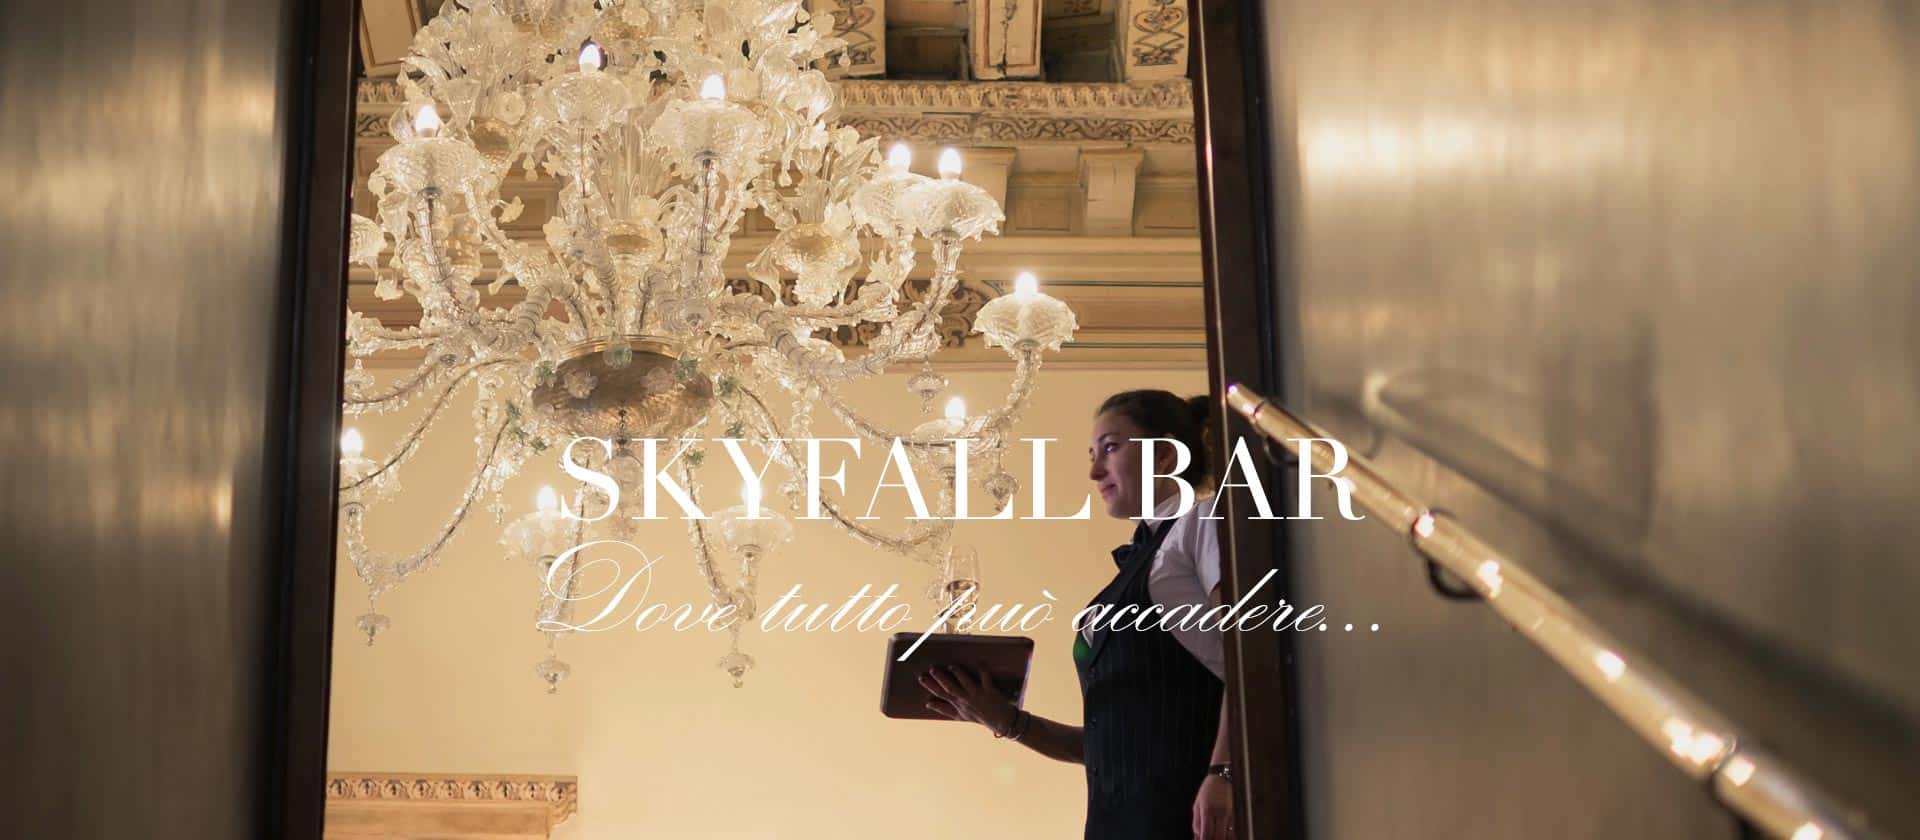 Skyfall bar